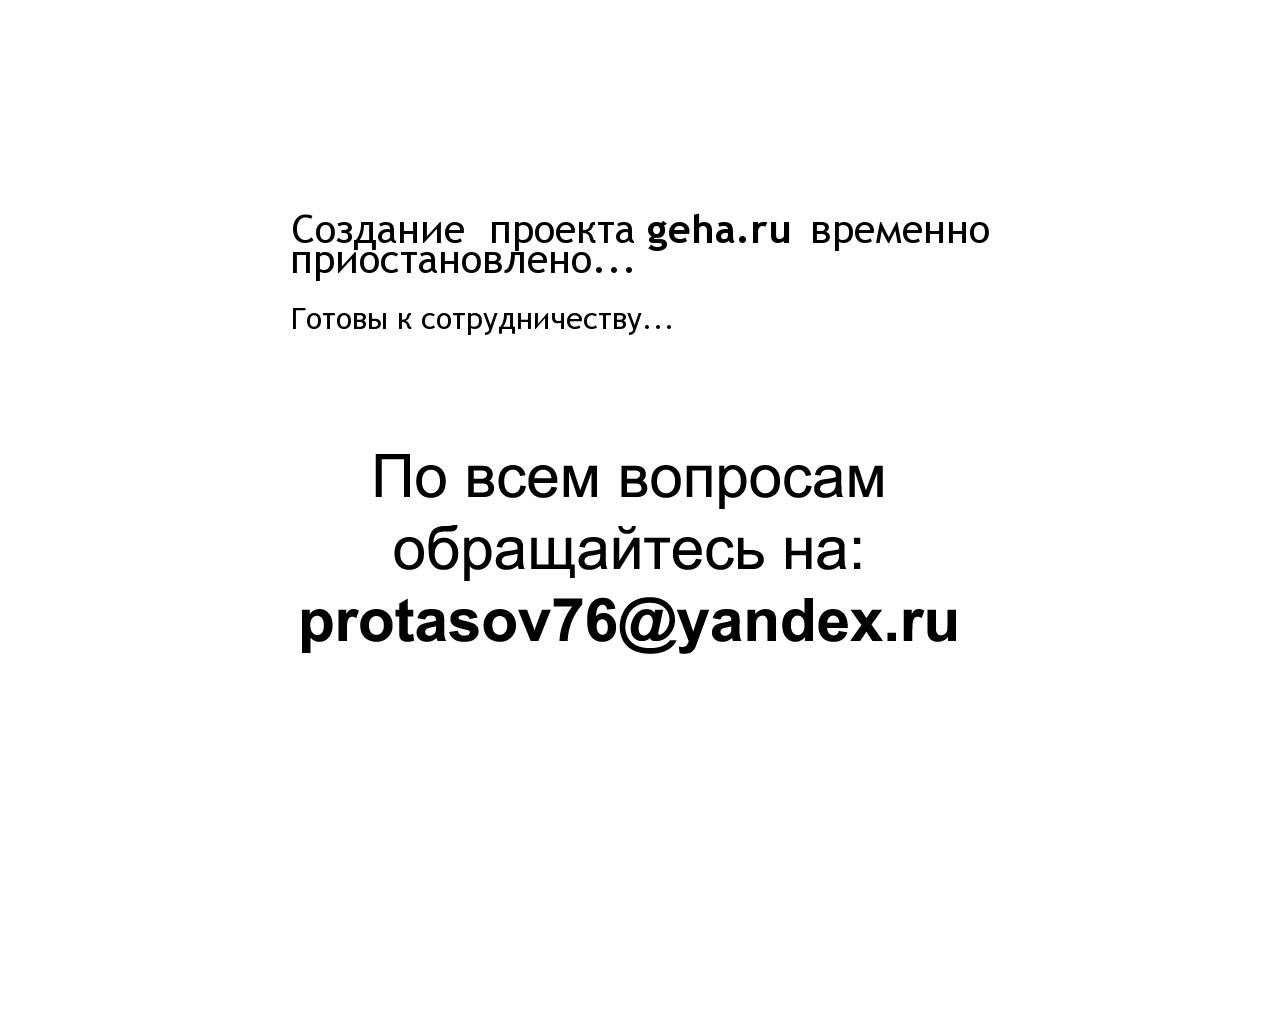 Изображение сайта geha.ru в разрешении 1280x1024